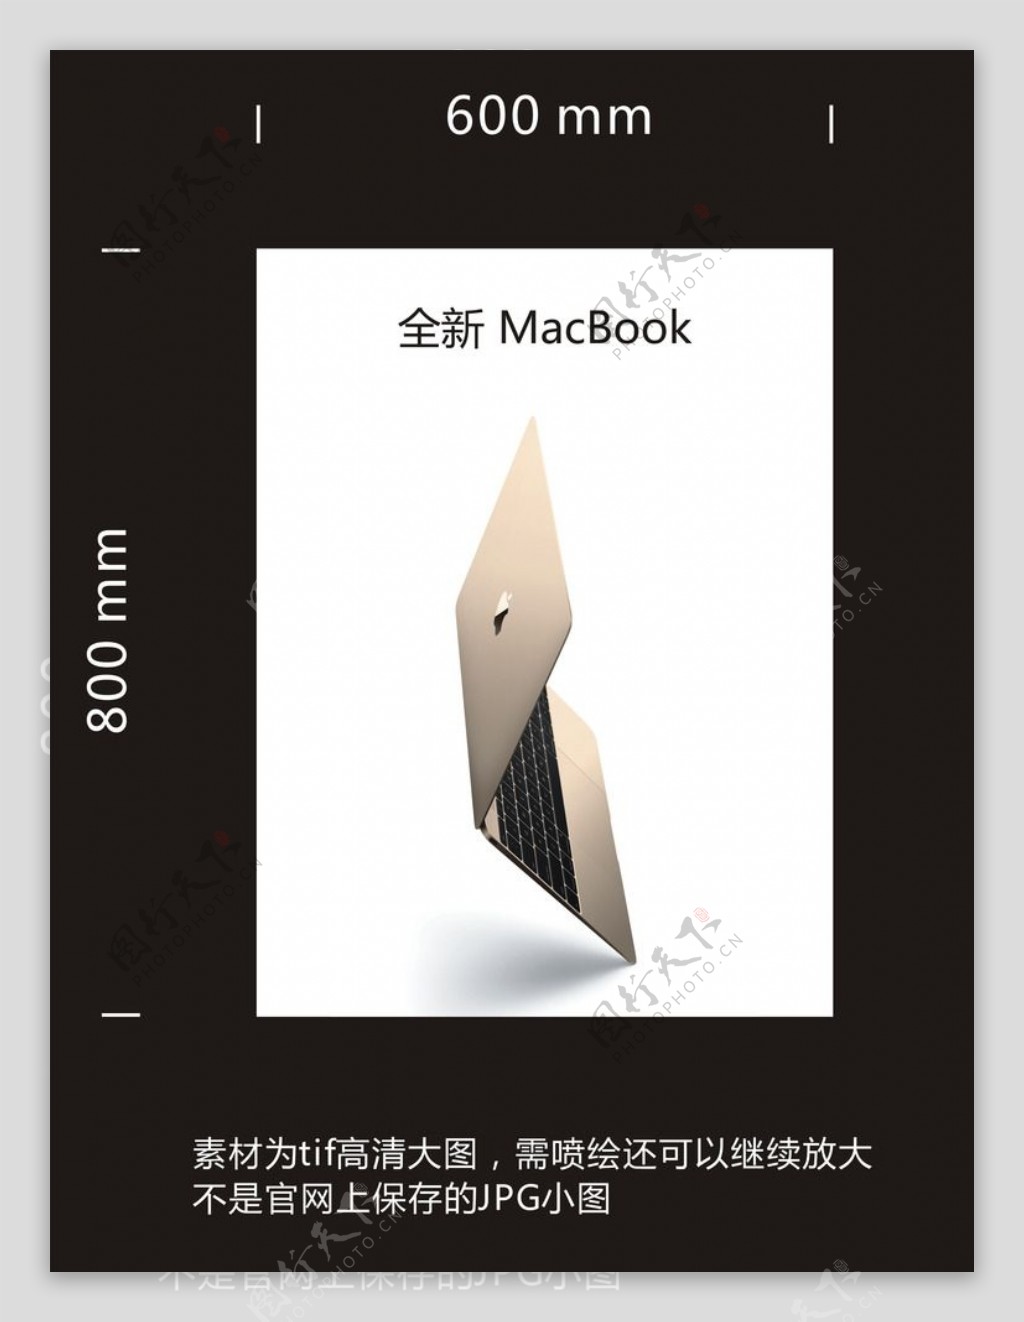 全新MacBook图片